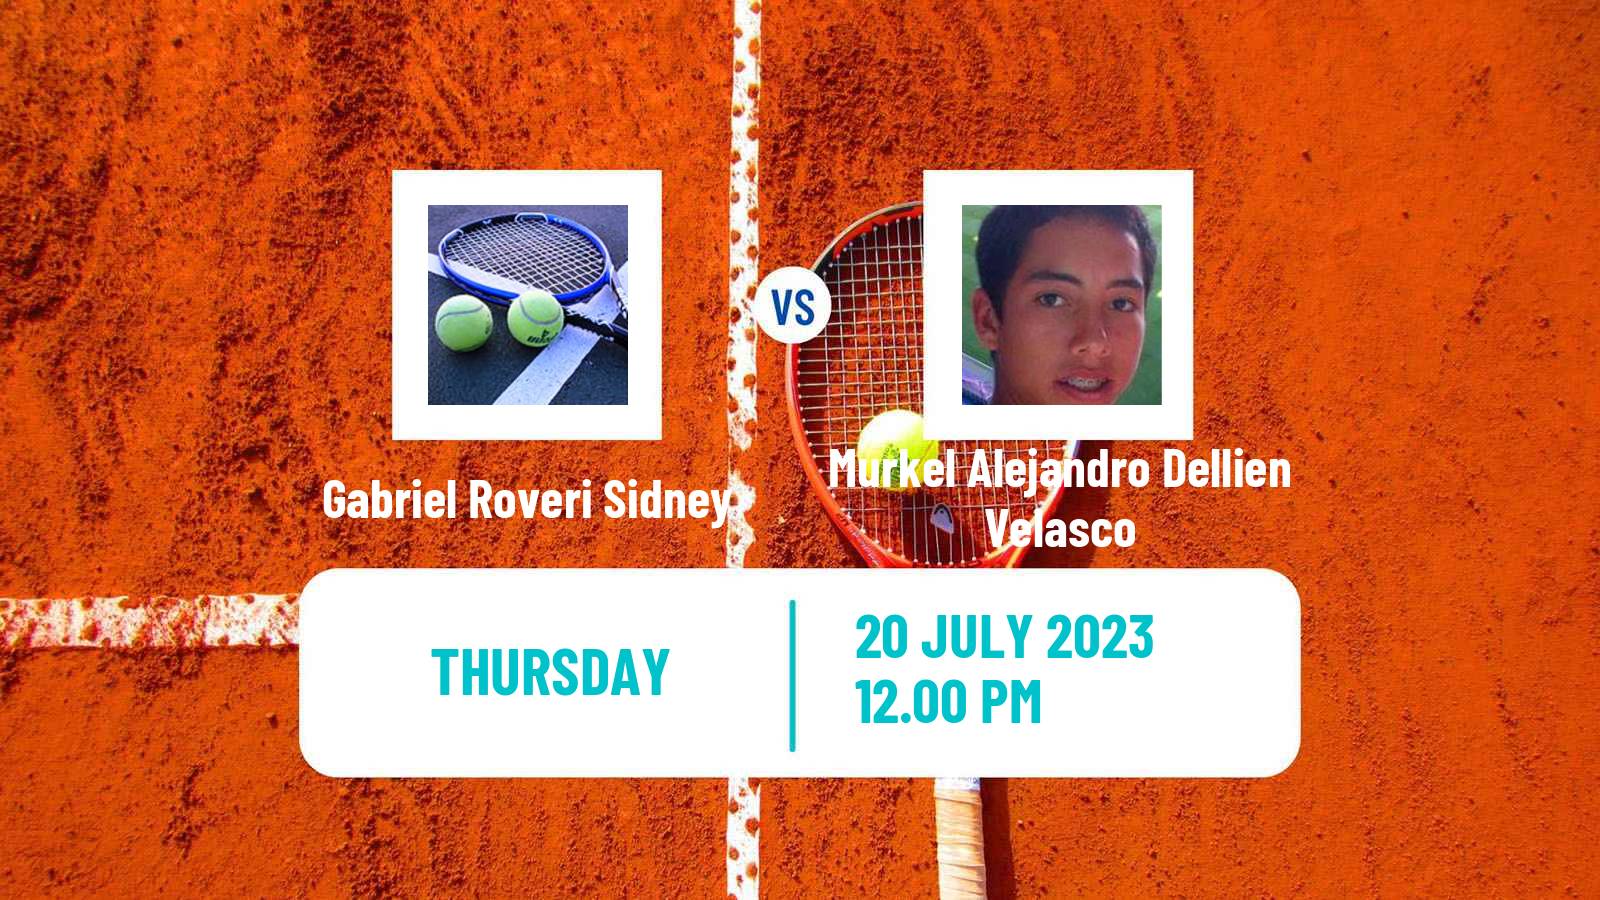 Tennis ITF M25 Gandia Men Gabriel Roveri Sidney - Murkel Alejandro Dellien Velasco